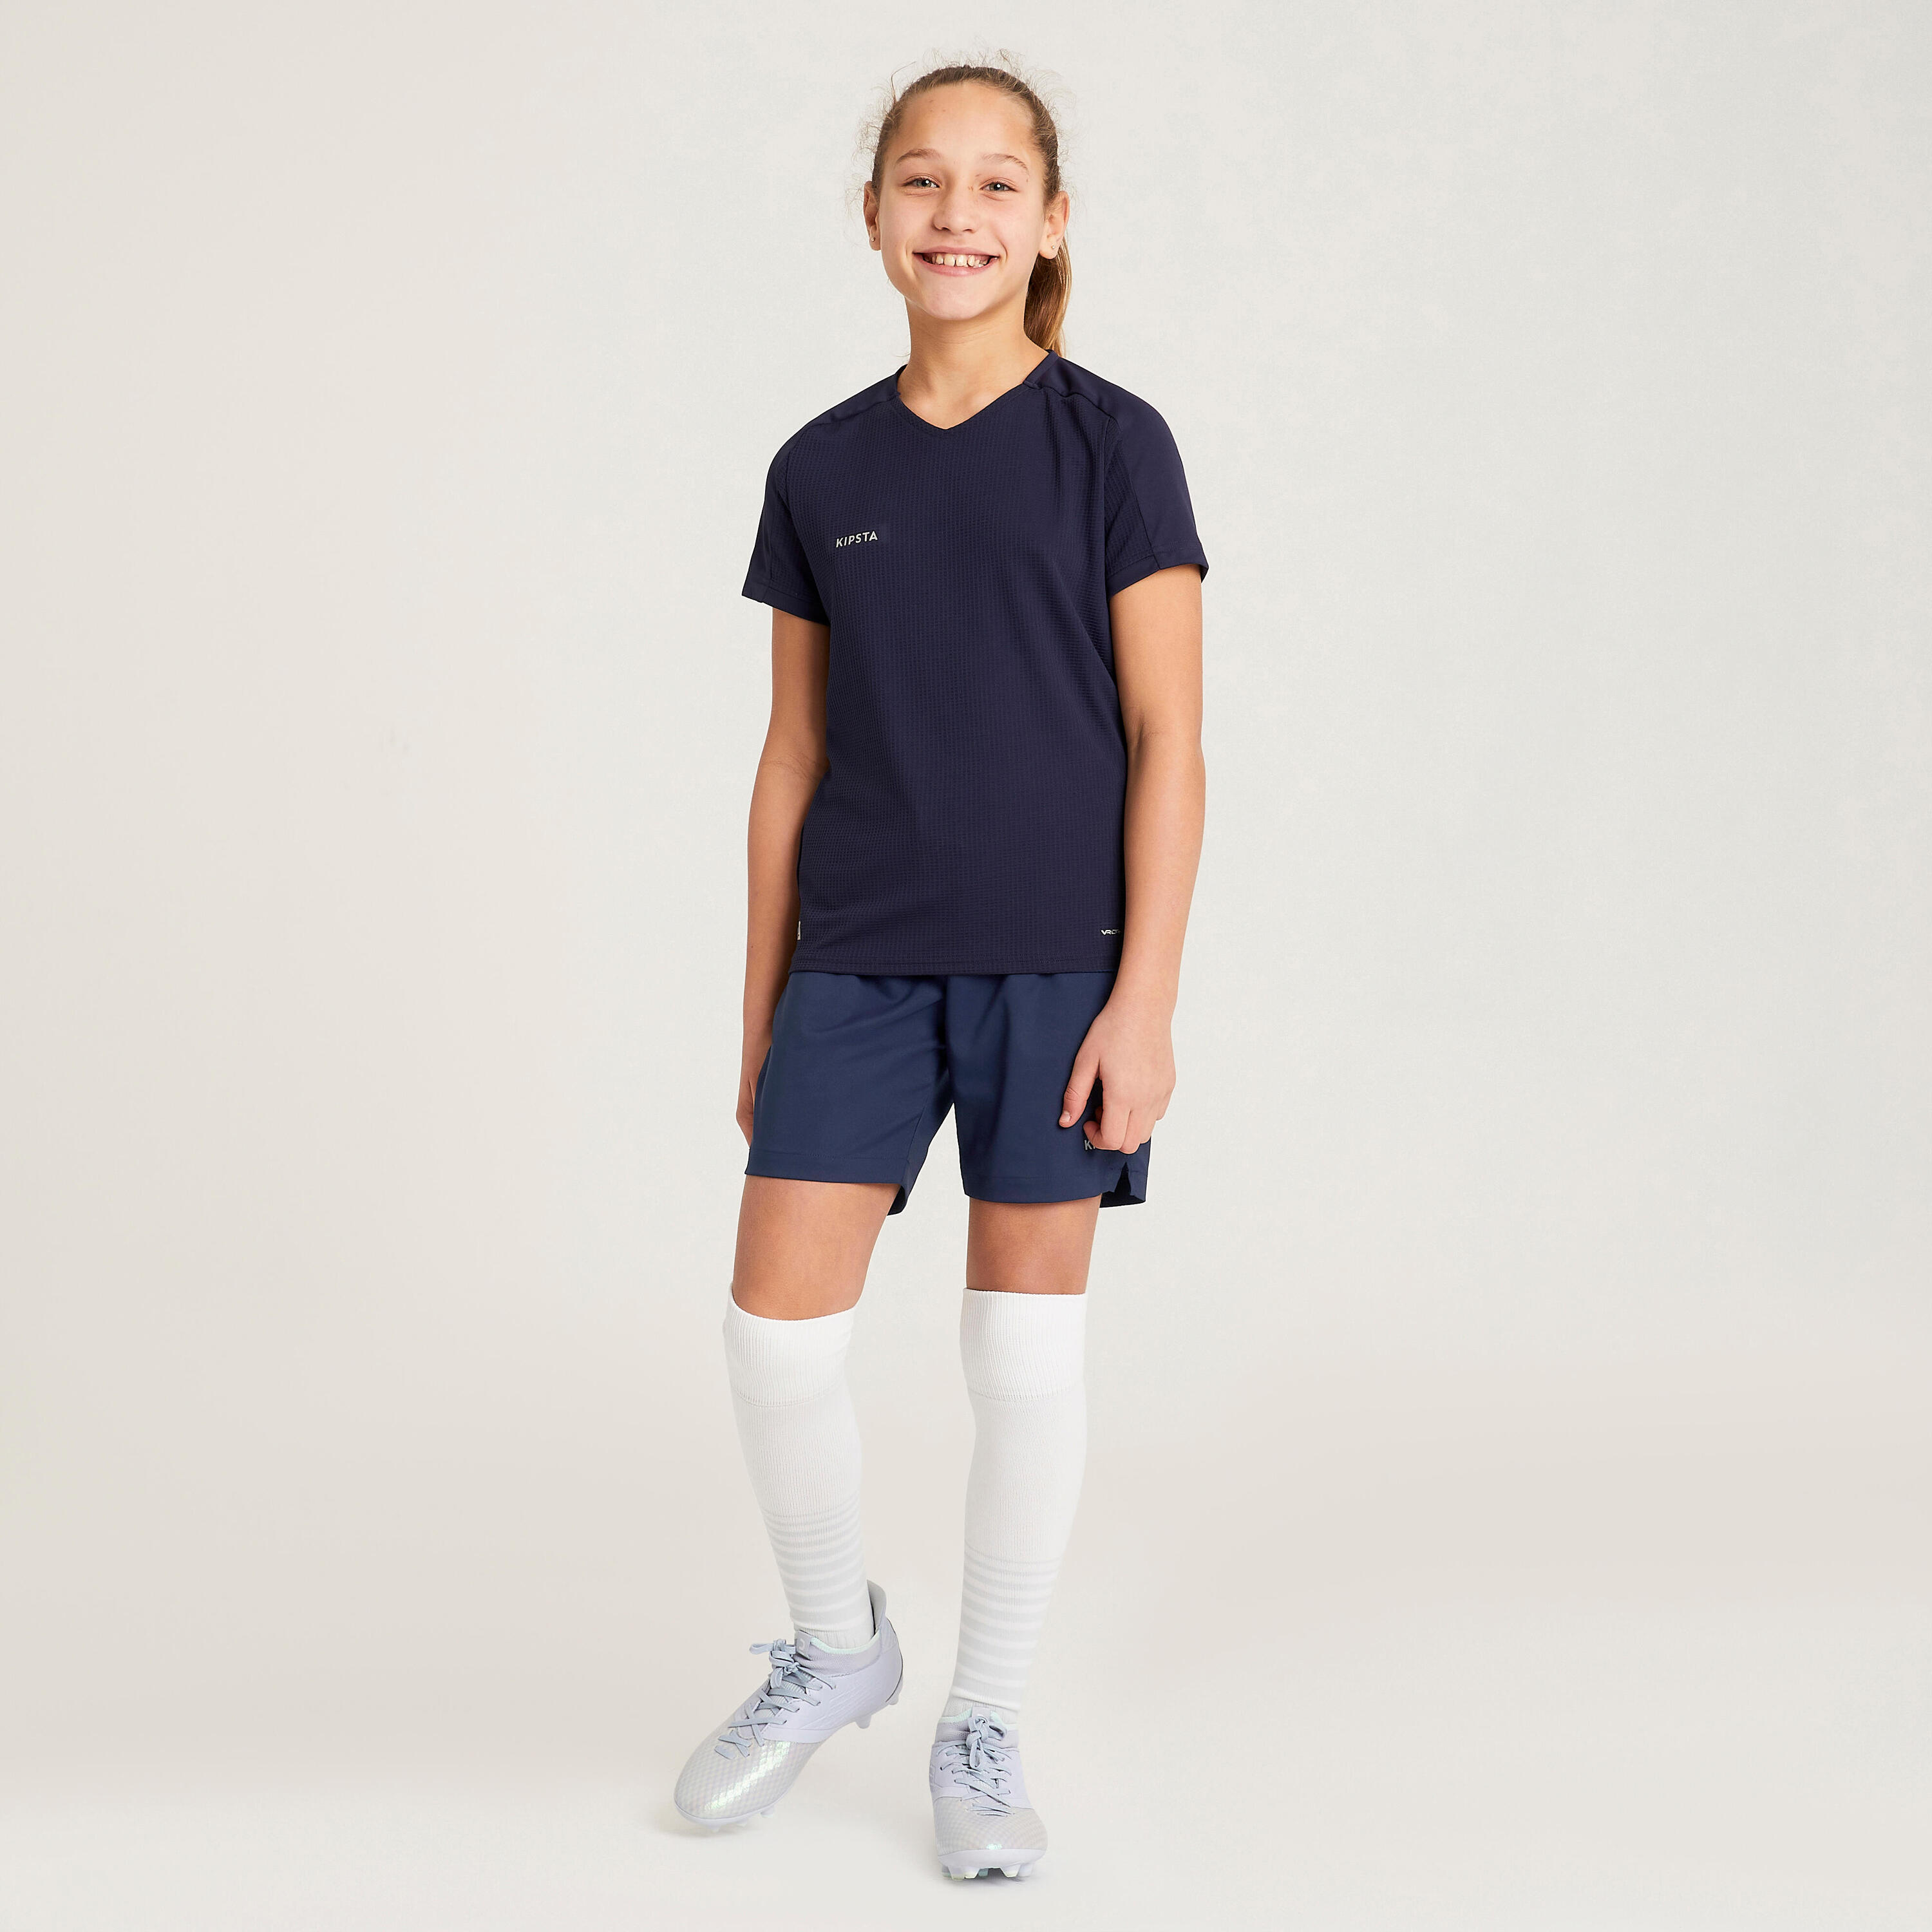 Girls' Football Shirt Viralto - Blue 6/12